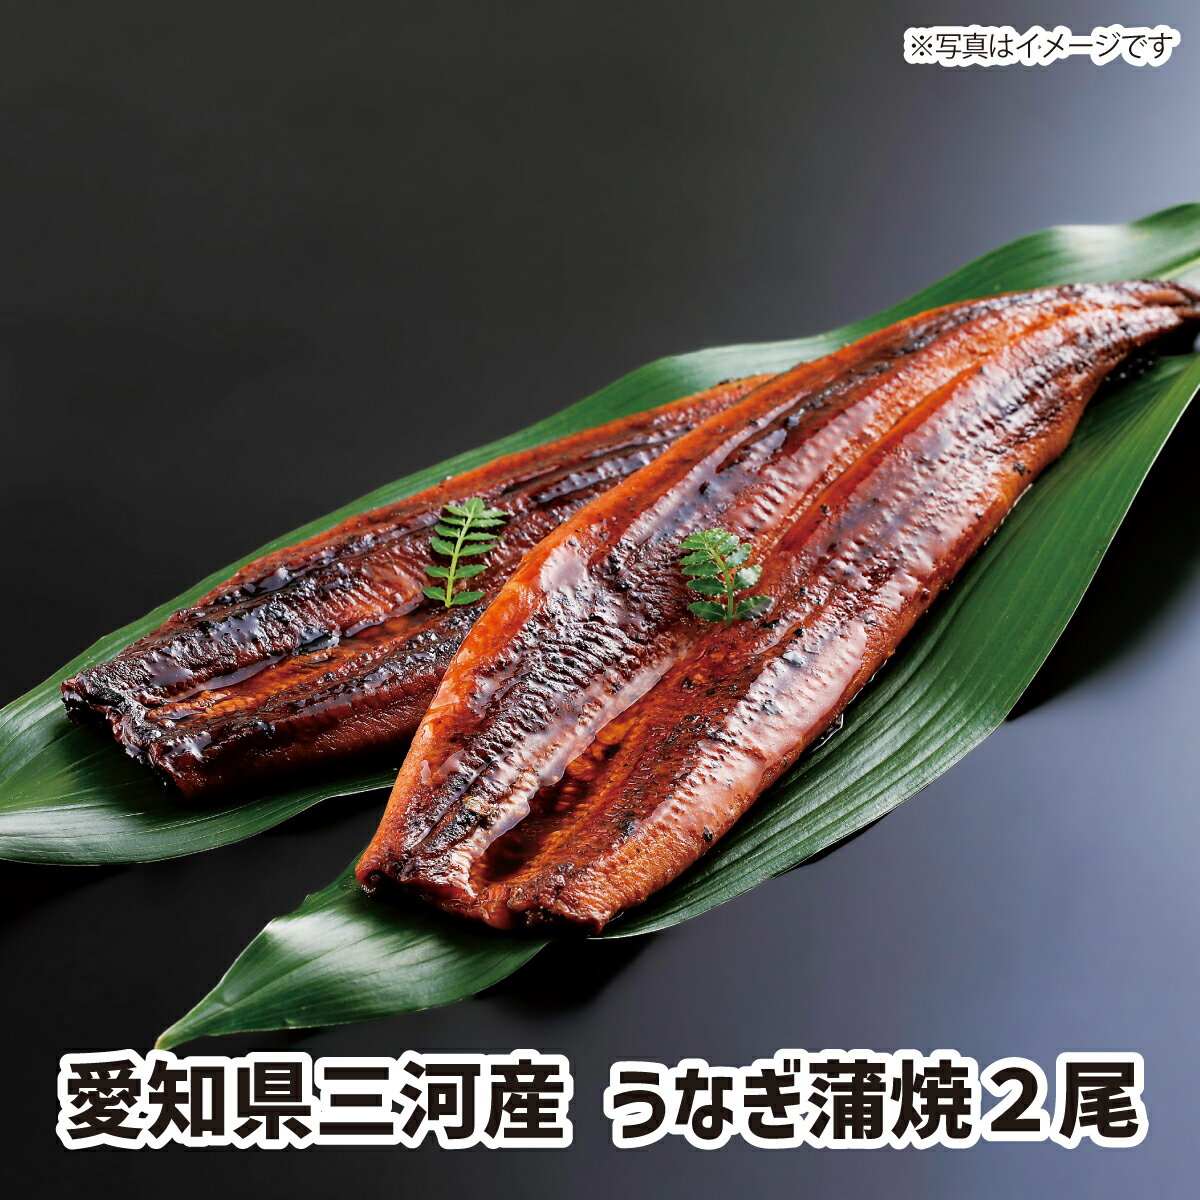 たまりしょうゆベースのたれで焼き上げた愛知県三河産のうなぎ蒲焼です。　